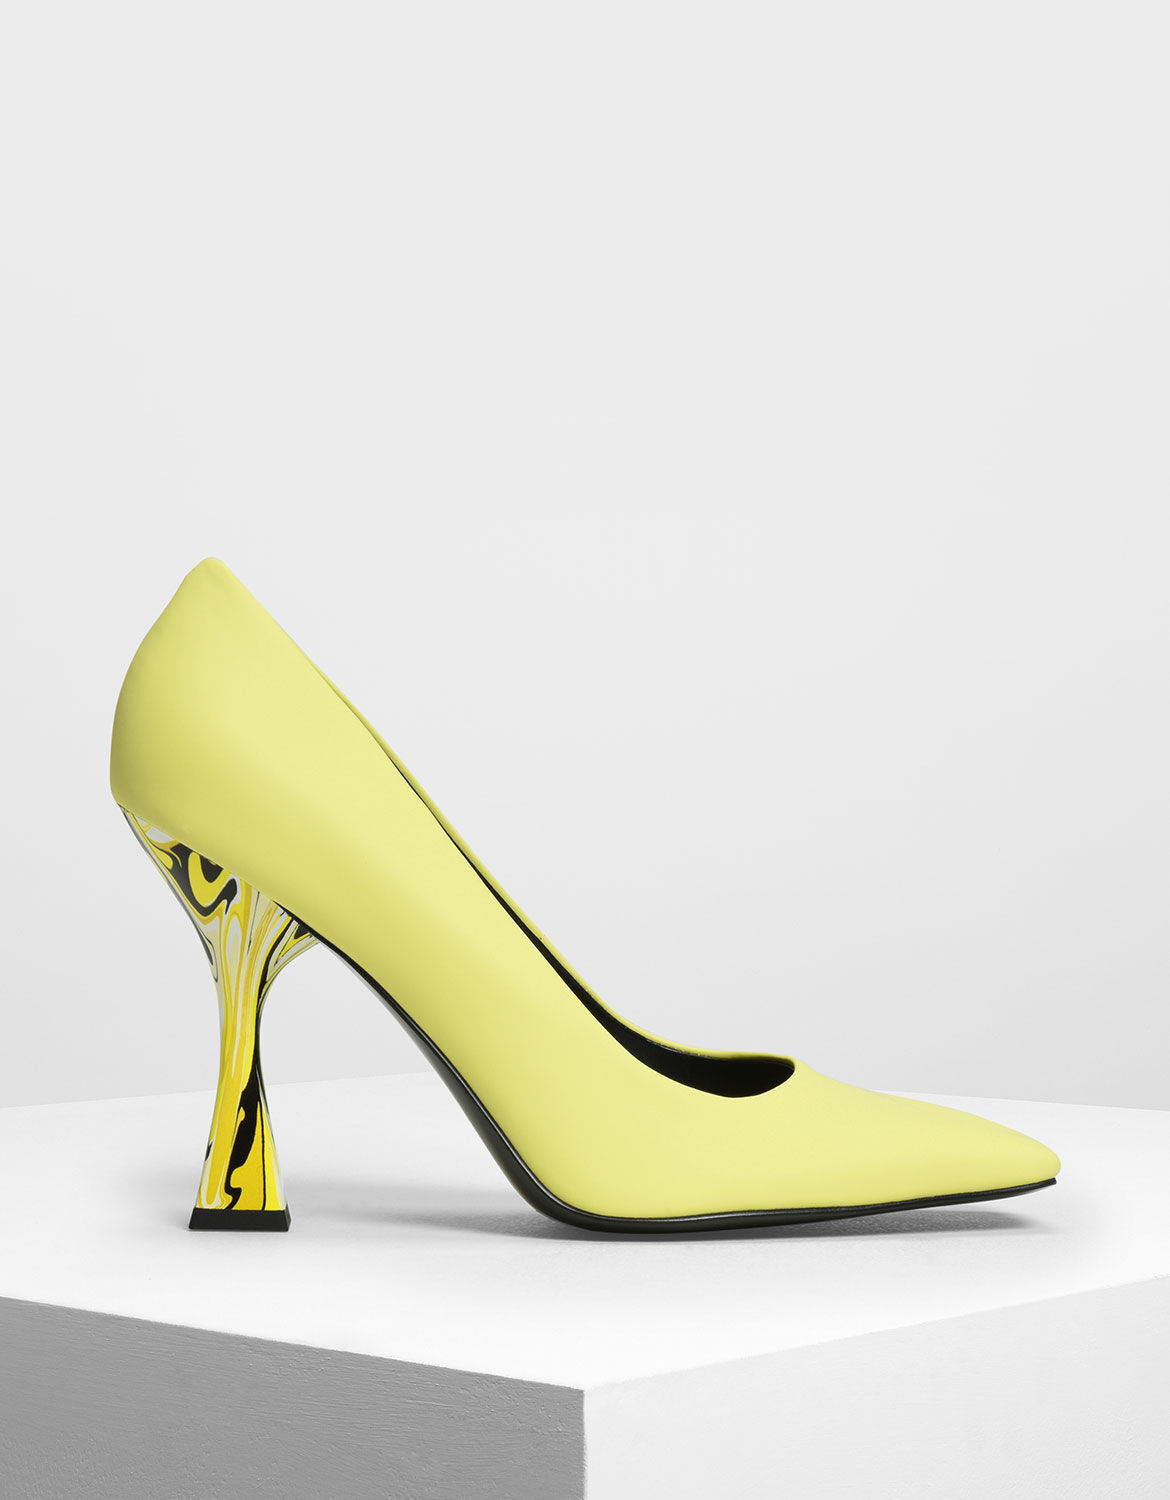 yellow court heels